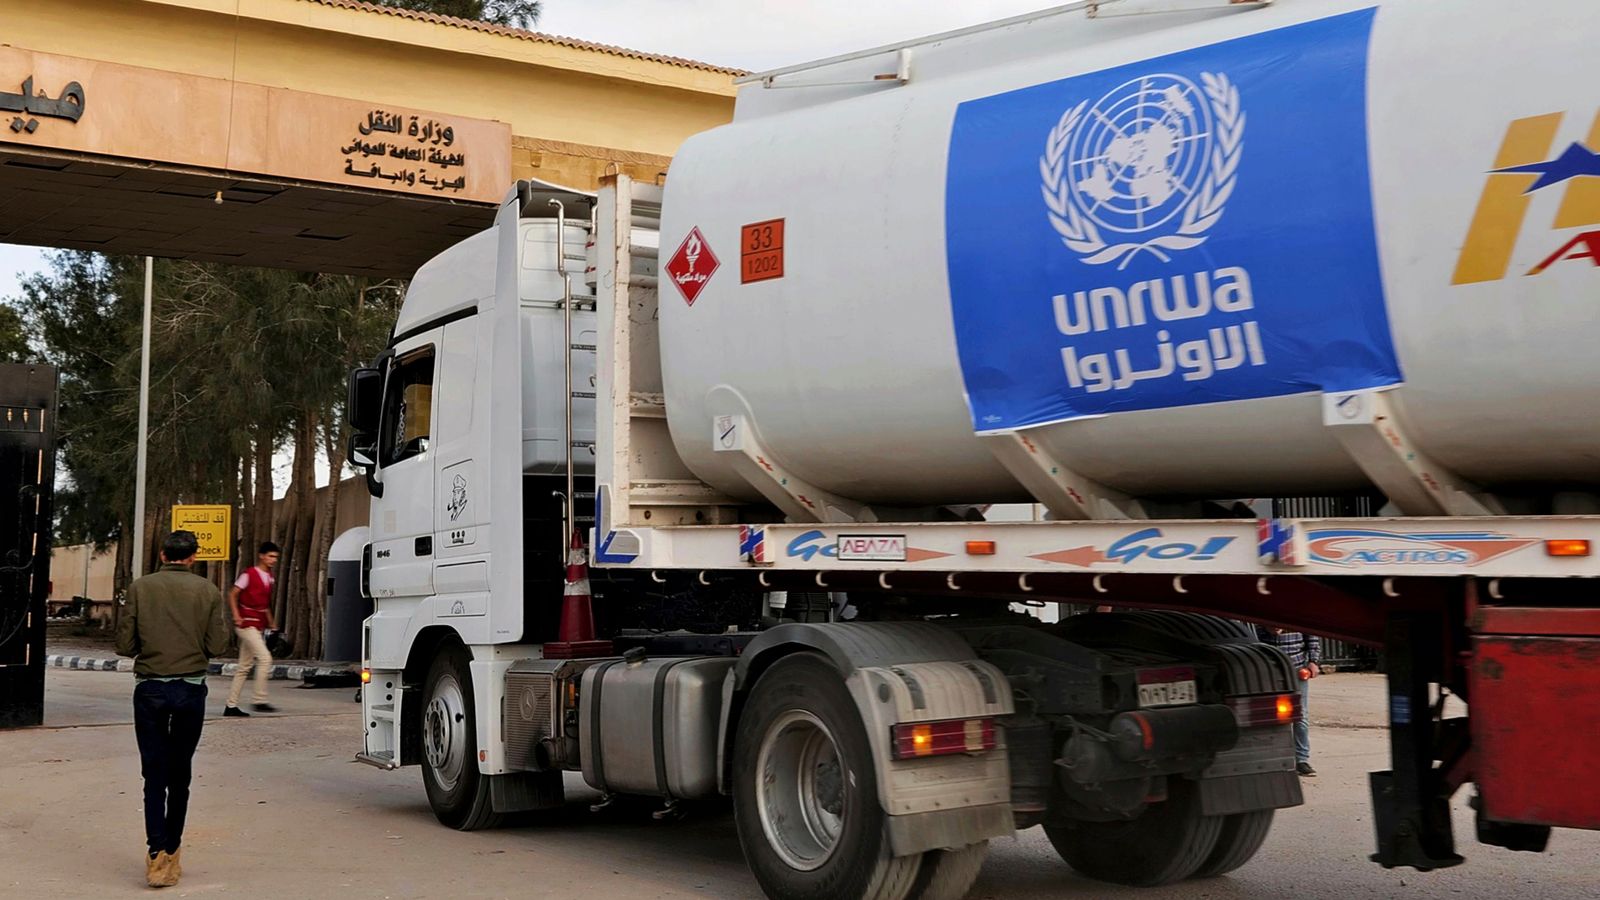 В какво са обвинени служителите на UNRWA в Газа, кои нации са спрели финансирането и какво се случва след това?